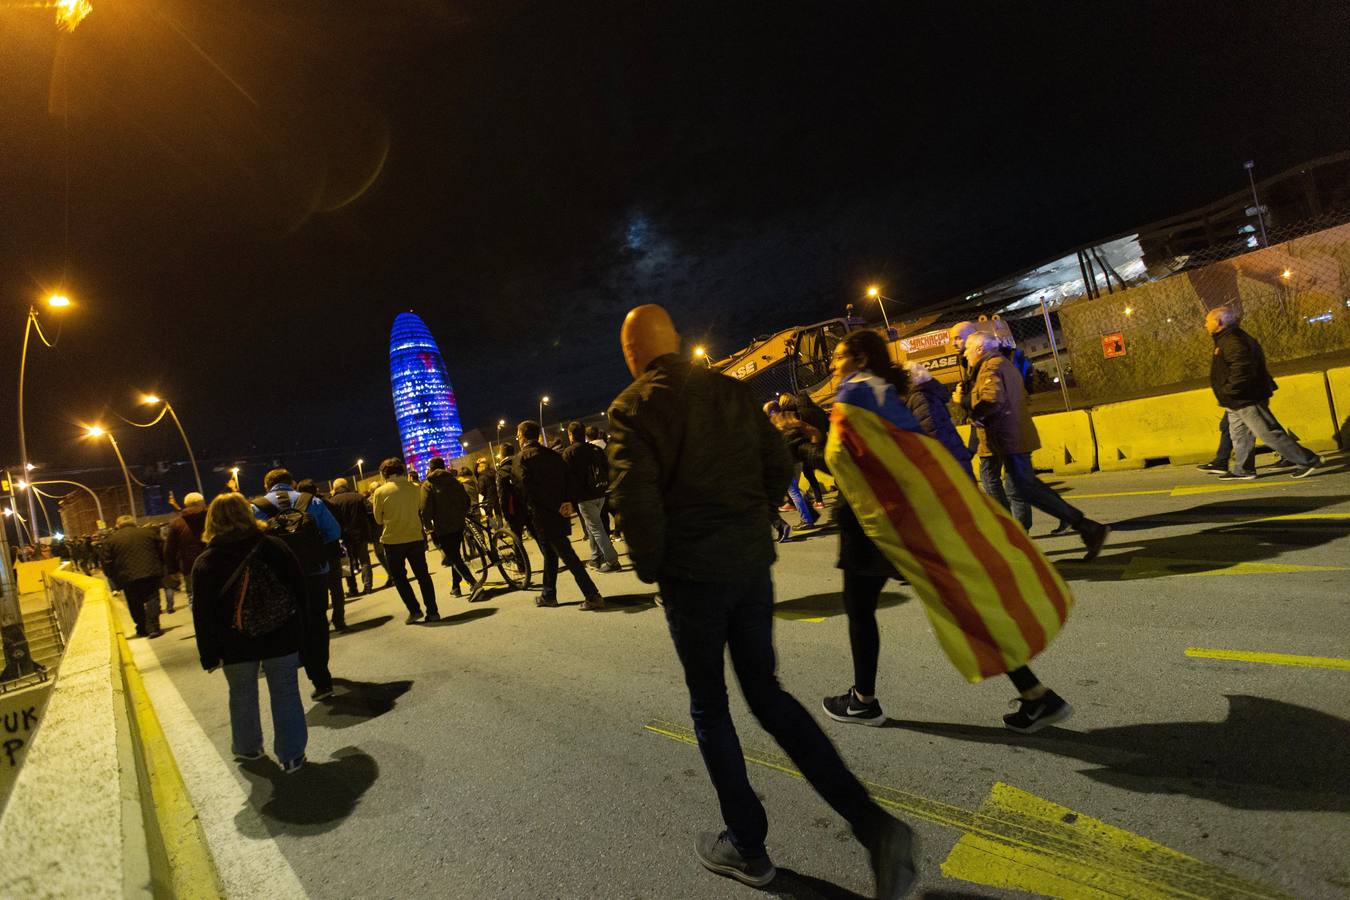 Plataformas independentistas han hecho llamamientos a través de las redes sociales para cortar el tráfico en otros puntos de Cataluña.